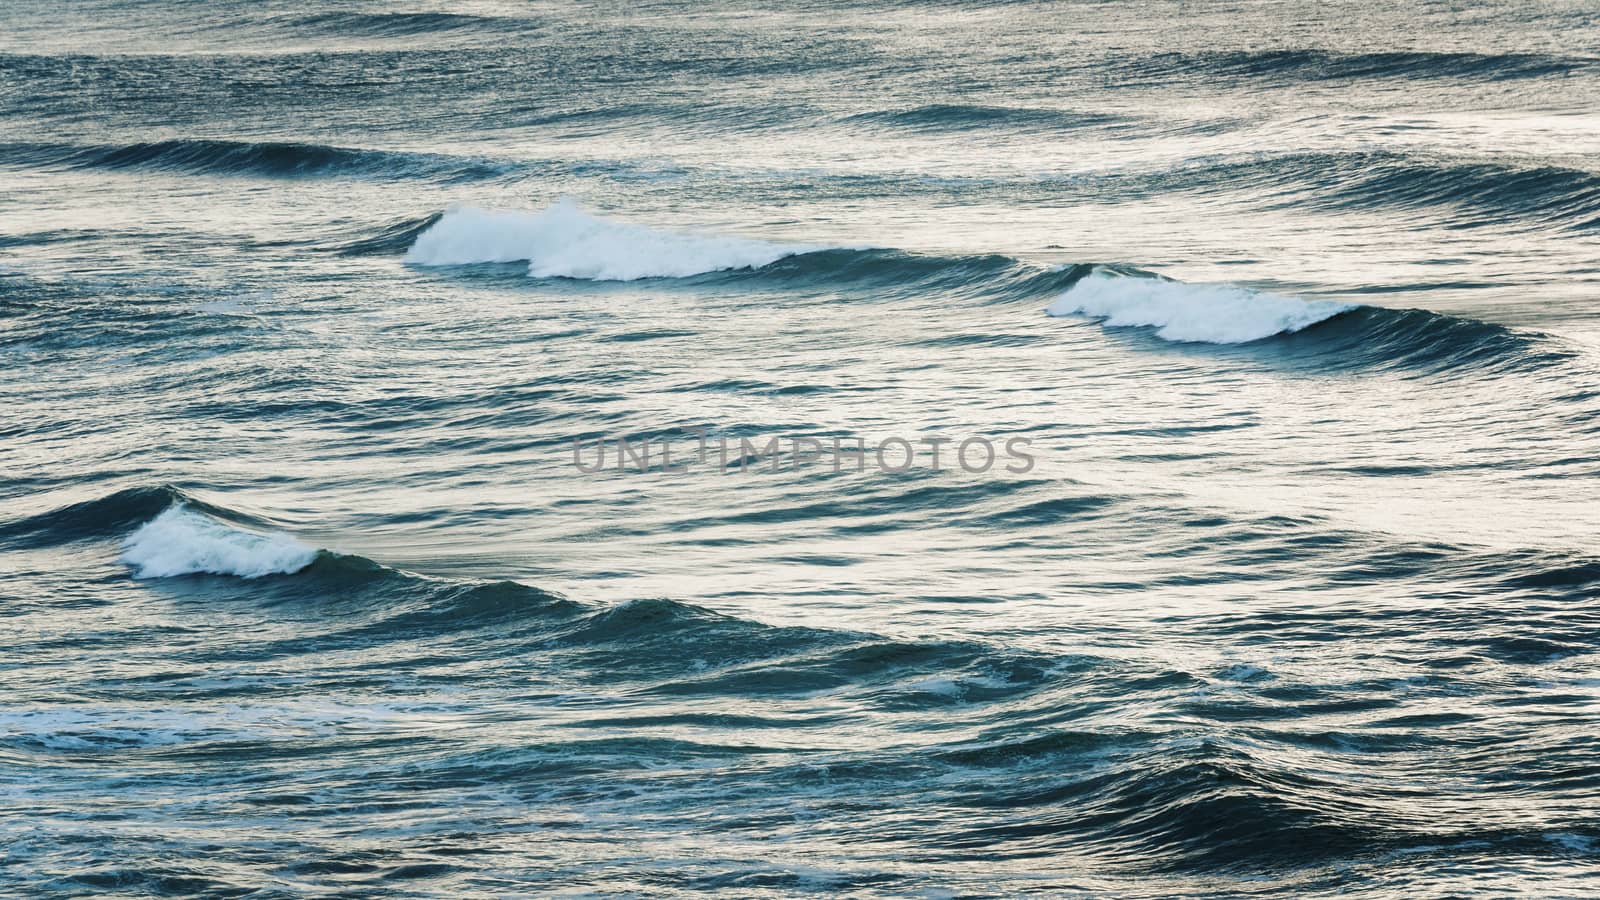 Ocean water and waves by dutourdumonde